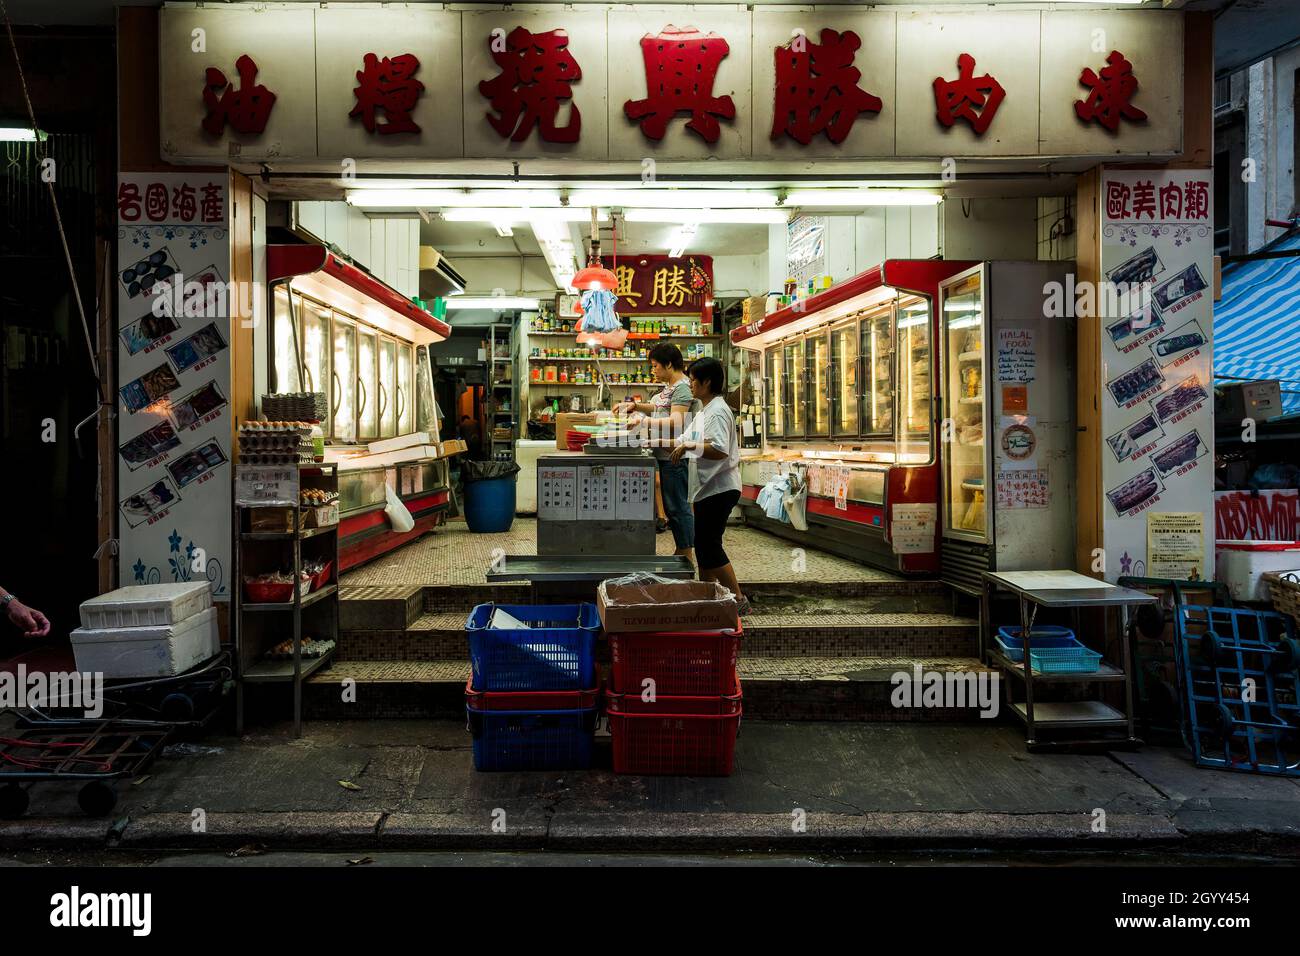 Une boutique vend des produits alimentaires surgelés à Gage Sreet, Central, Hong Kong Island Banque D'Images